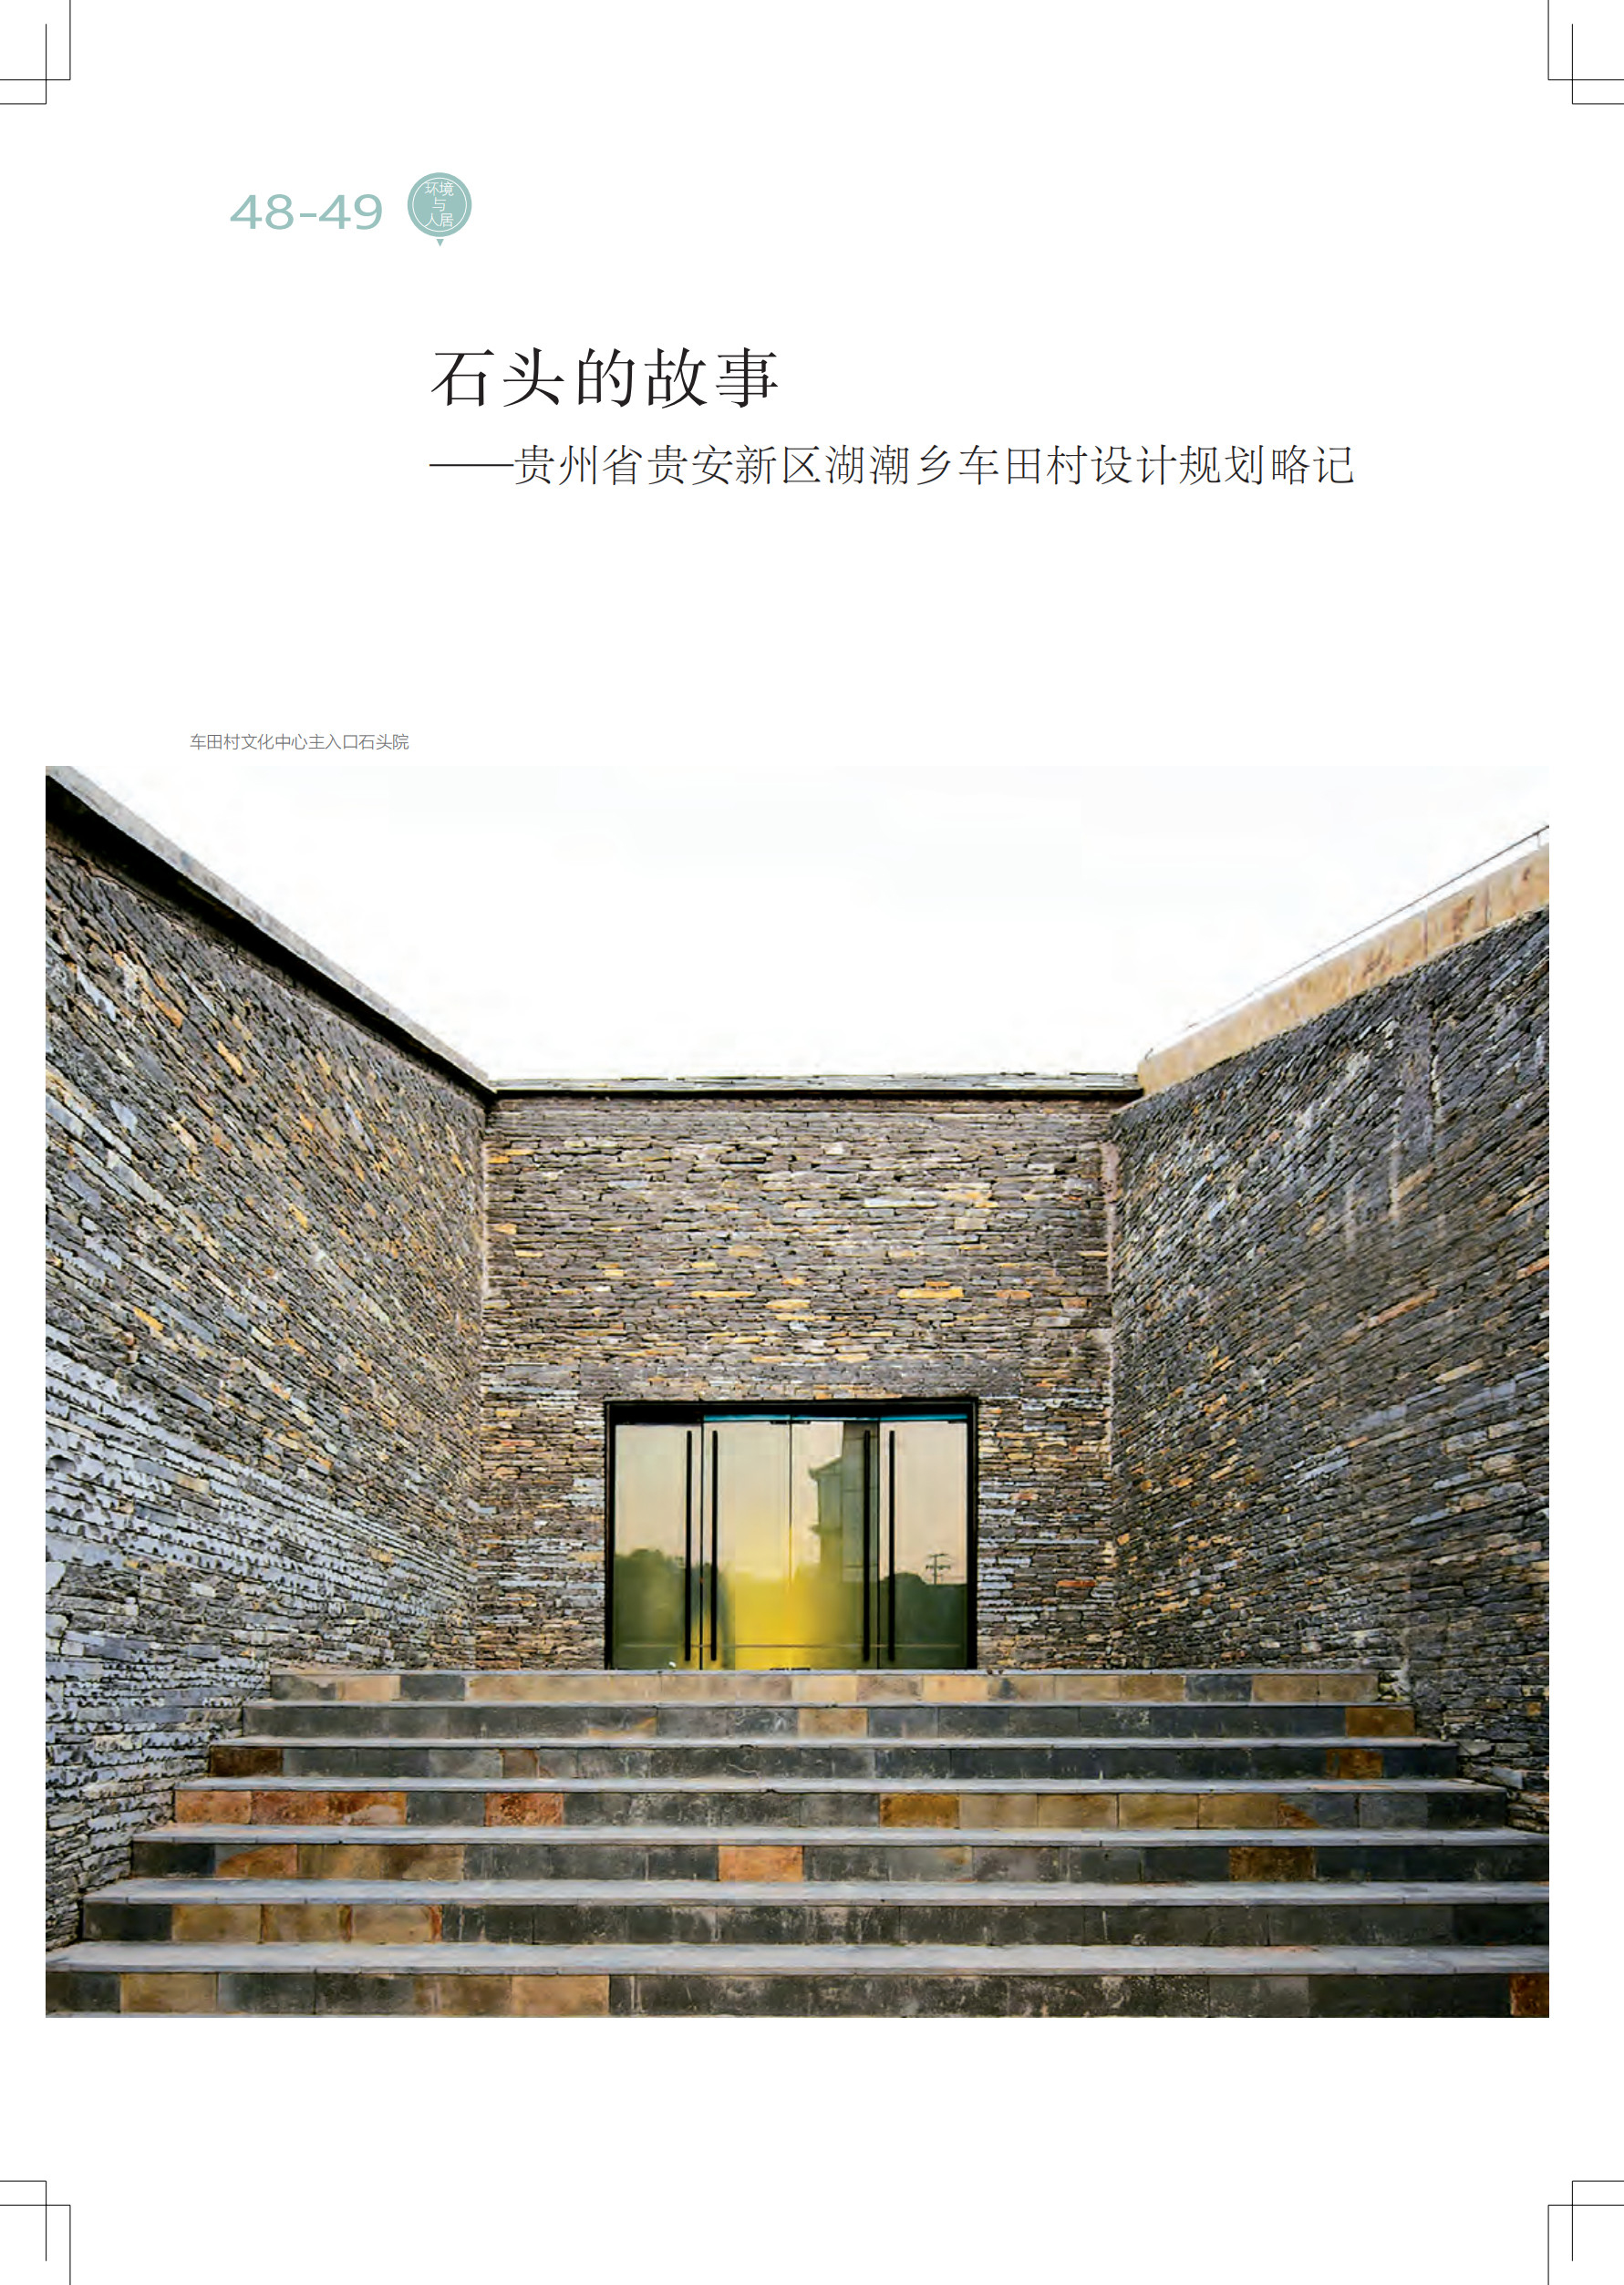 中国艺术2月刊 (2).jpg